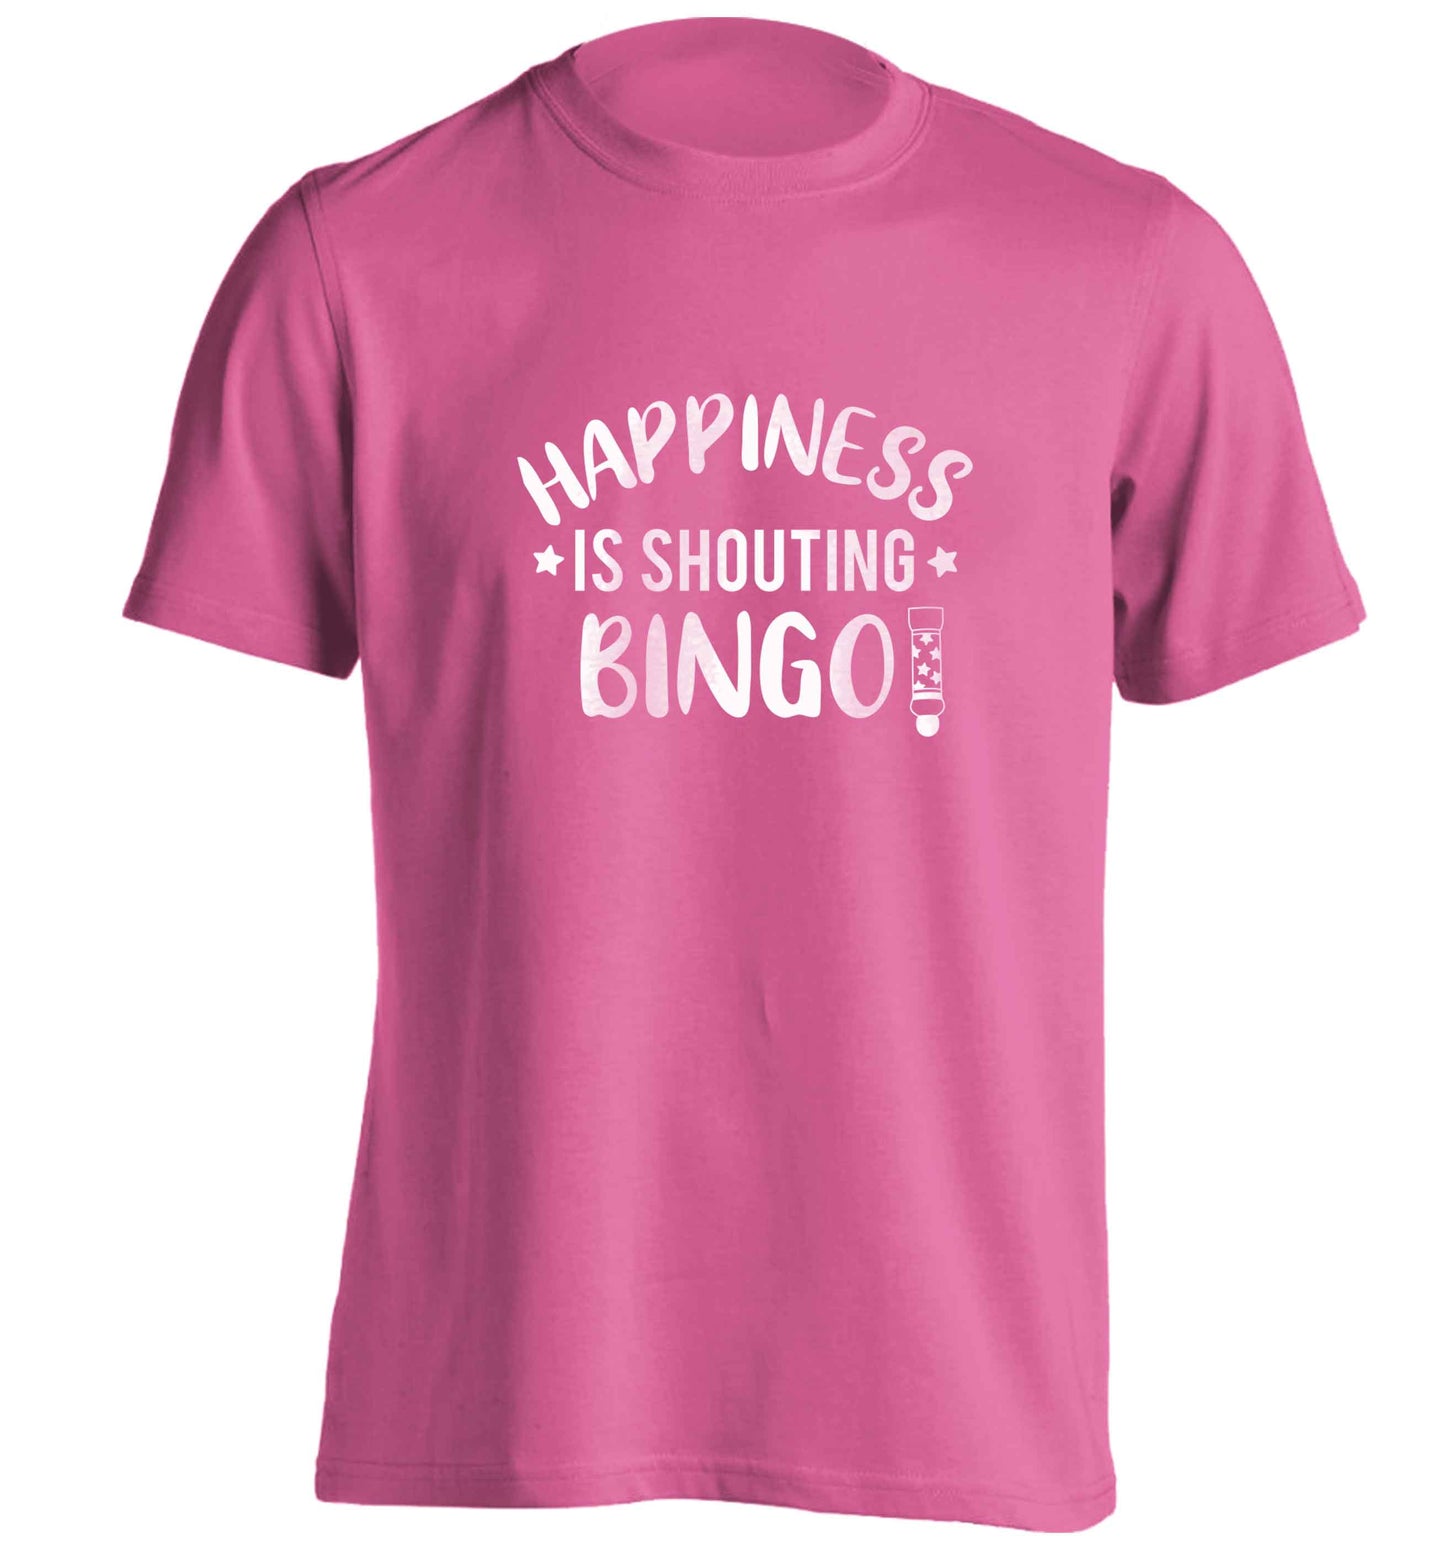 Happiness is shouting bingo! adults unisex pink Tshirt 2XL